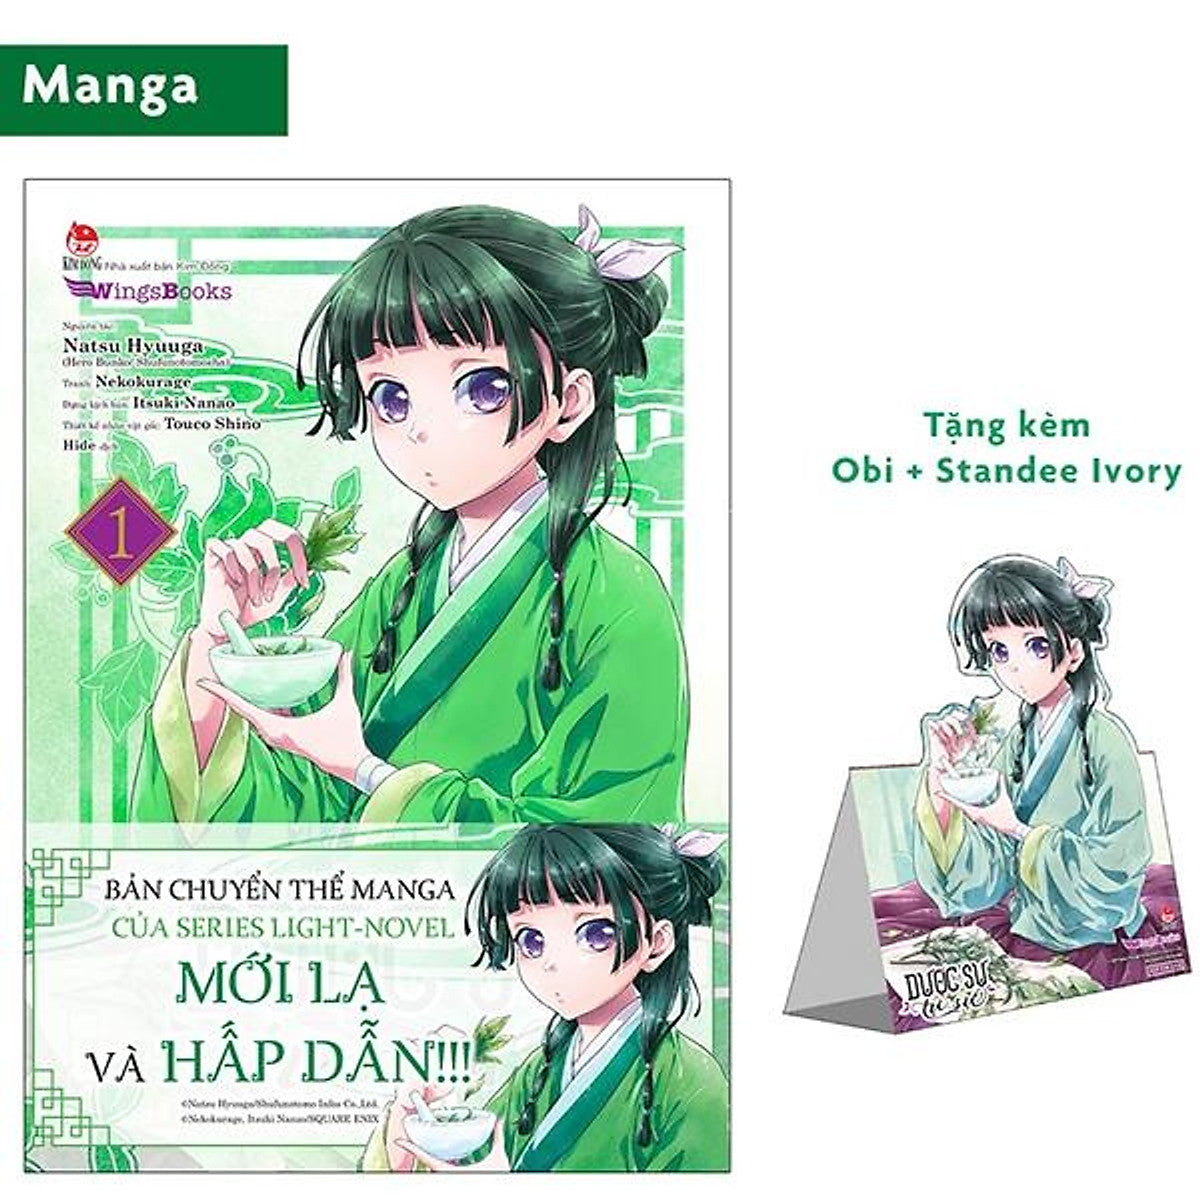 Dược Sư Tự Sự (Manga) - Tập 1